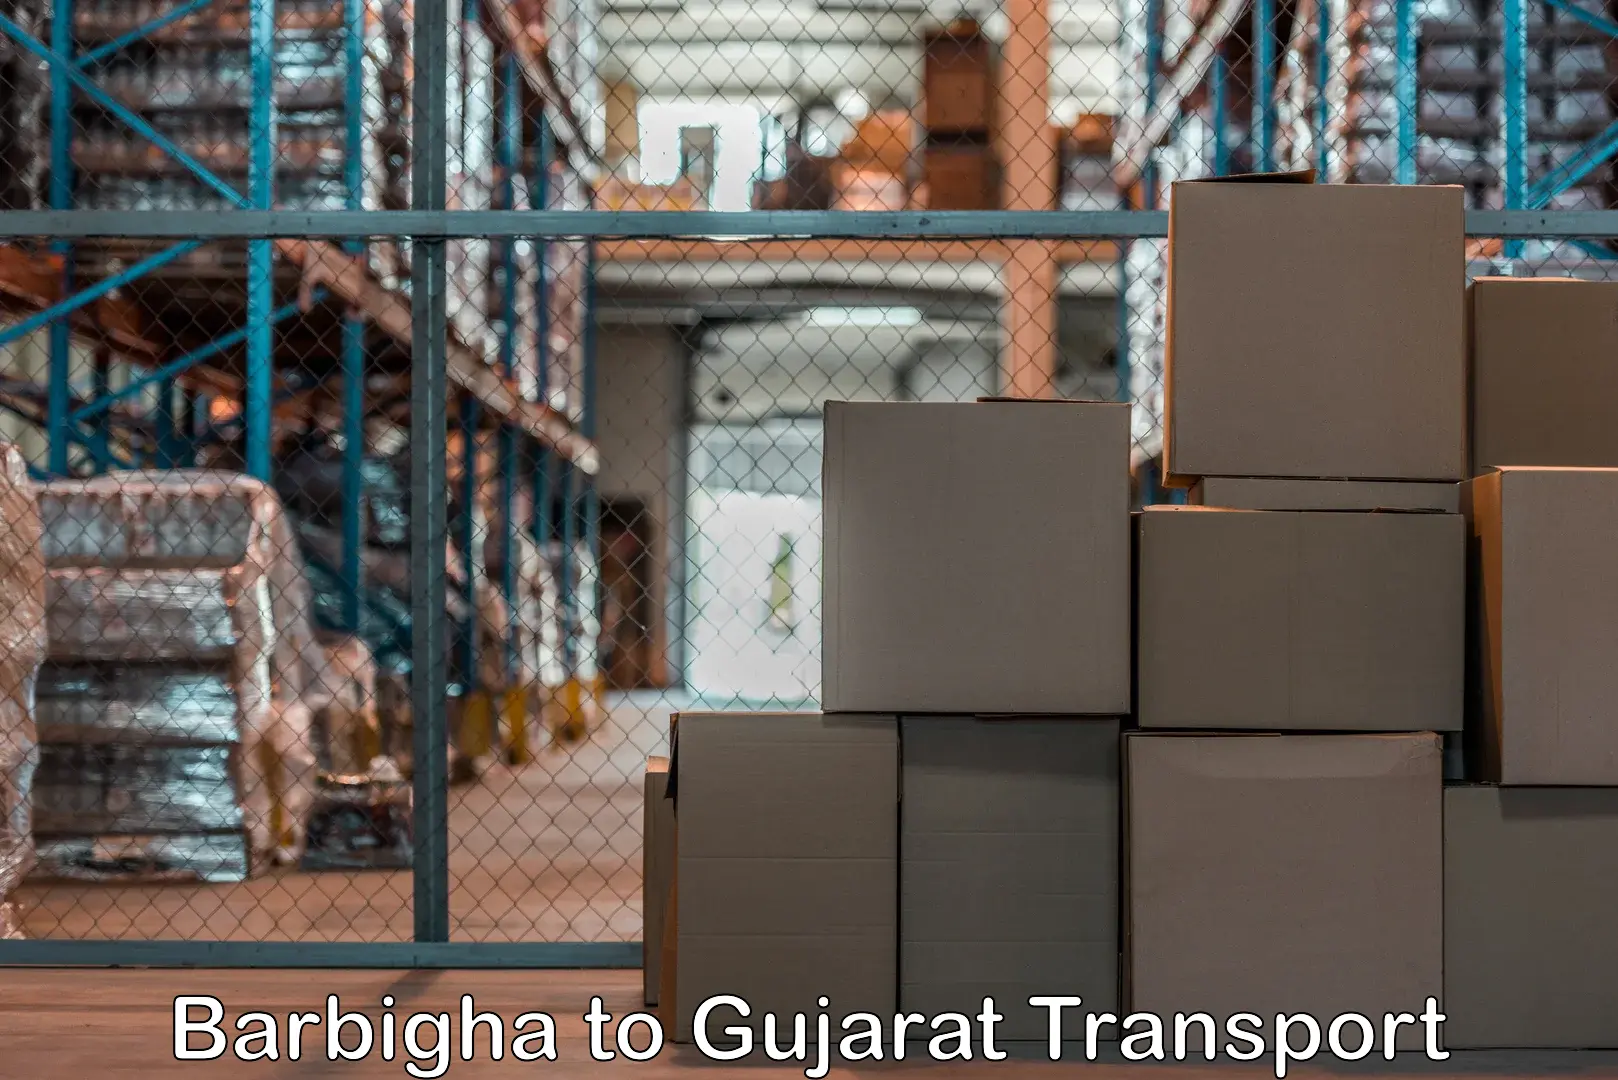 Container transport service Barbigha to IIIT Vadodara